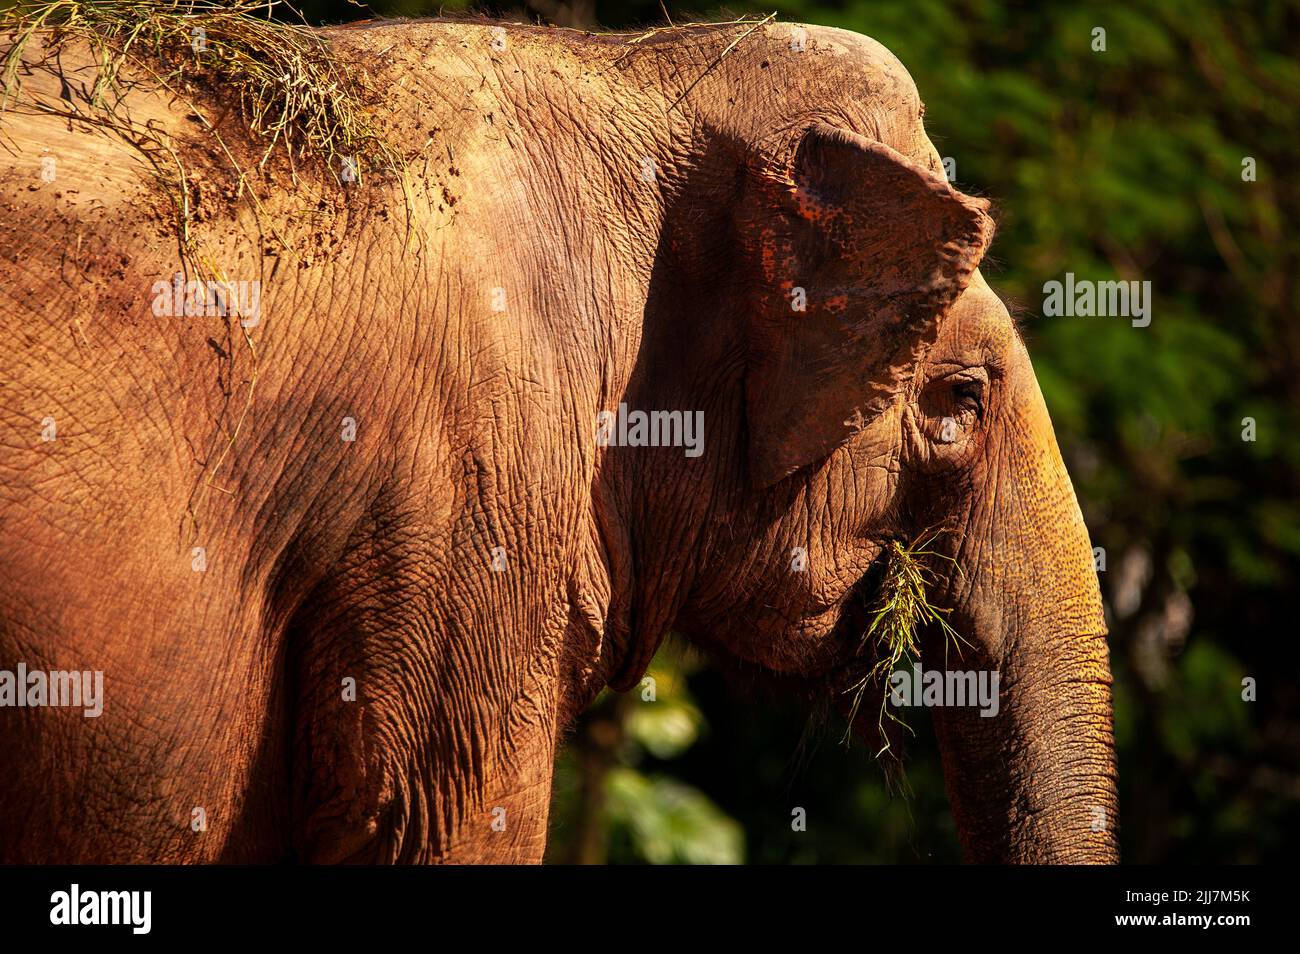 El elefante asiático tiene un oído muy pequeño comparado con su contraparte africana. Foto de stock